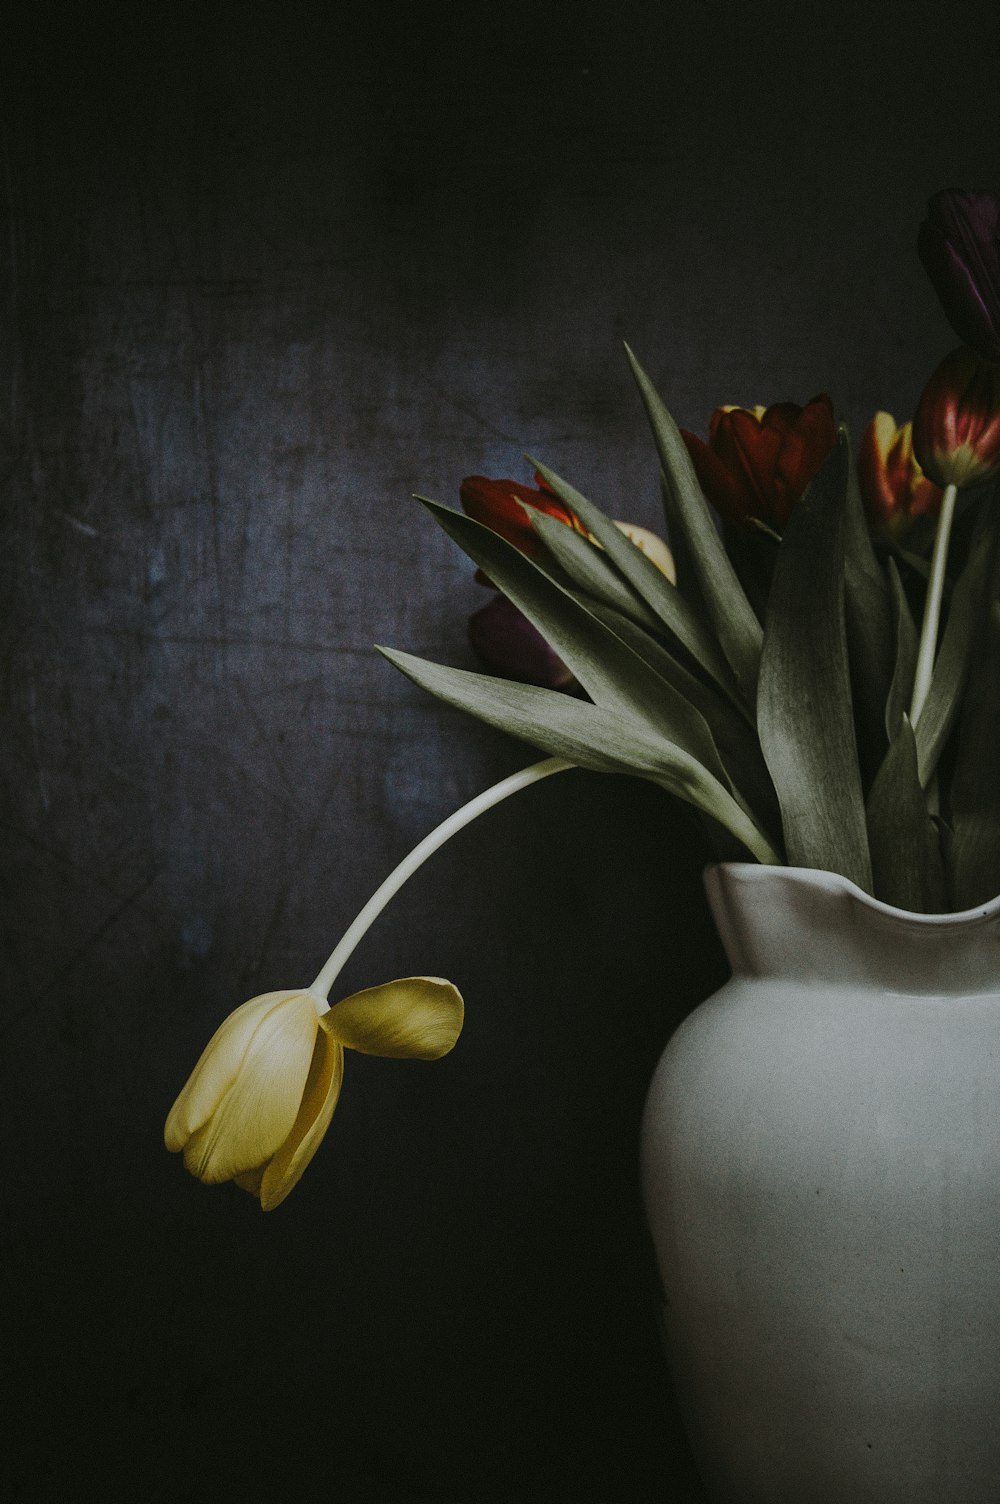 fiori di tulipani rossi e gialli sul vaso vicino al muro